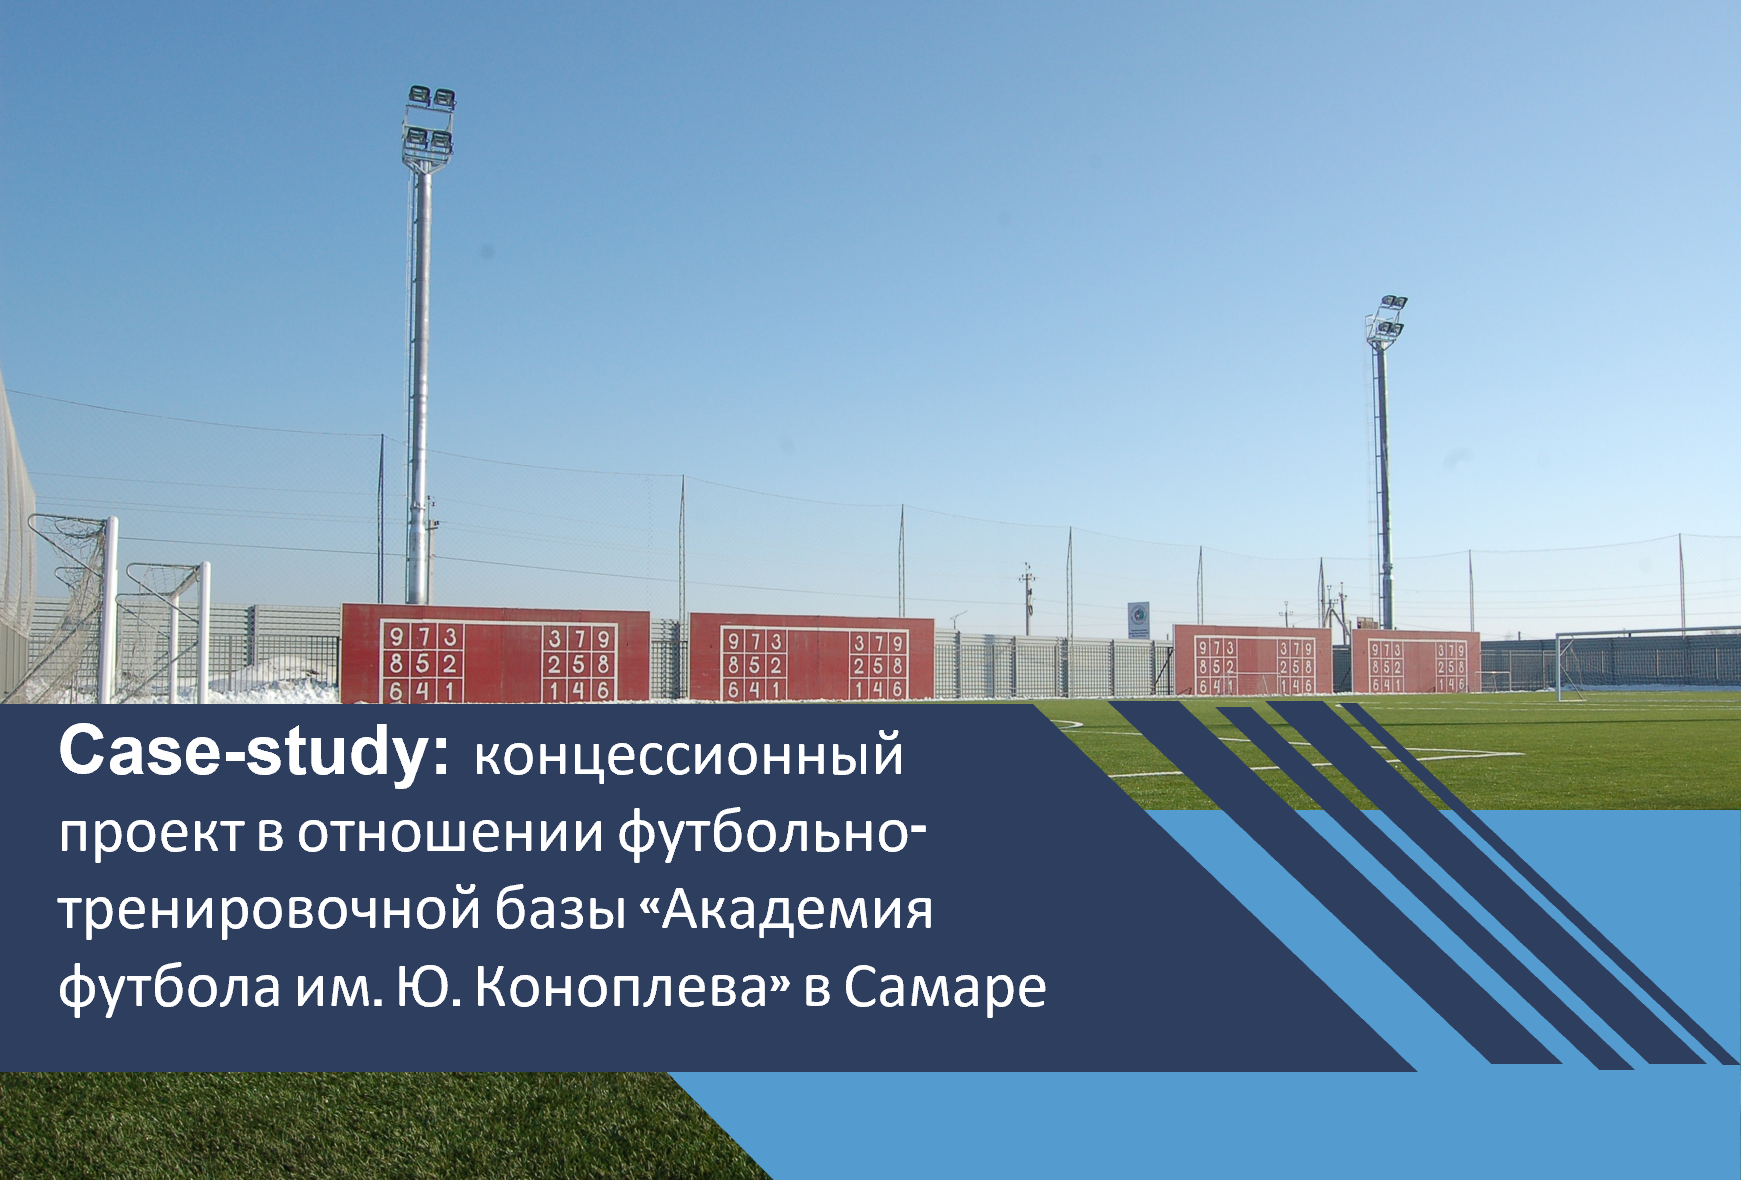 Концессионный проект в отношении футбольно-тренировочной базы «Академия футбола им. Ю. Коноплева» в Самаре